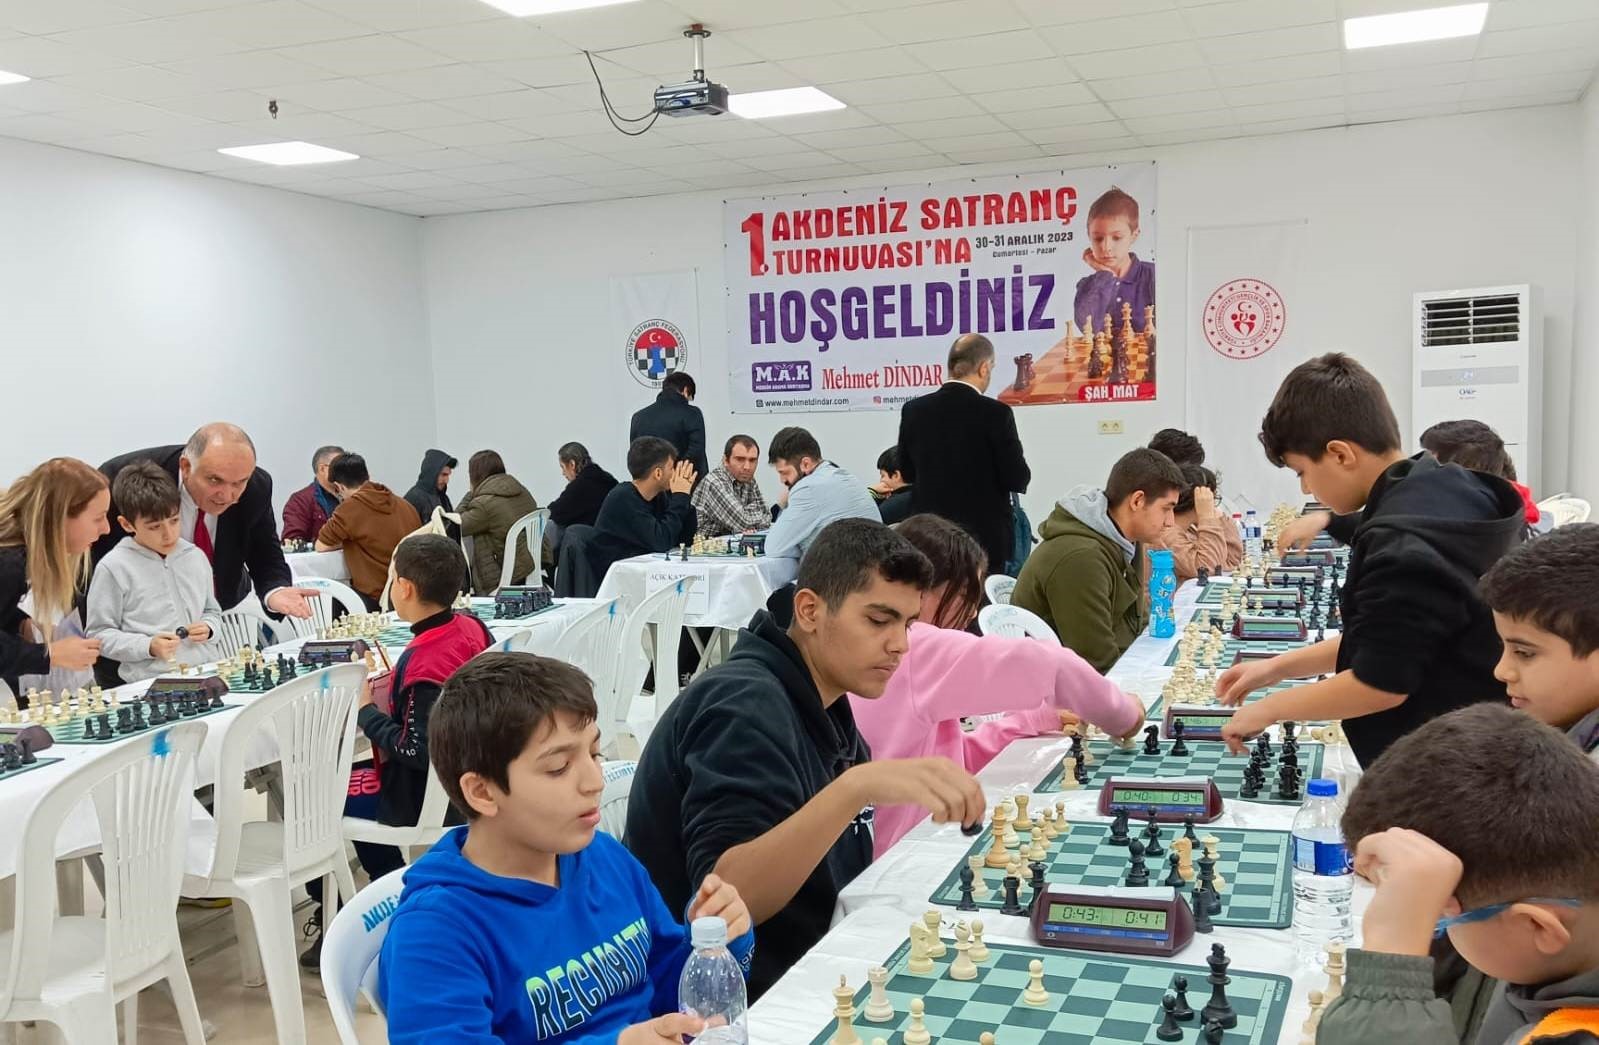 Mersinli gençler 1. Akdeniz Satranç Turnuvasında buluştu
